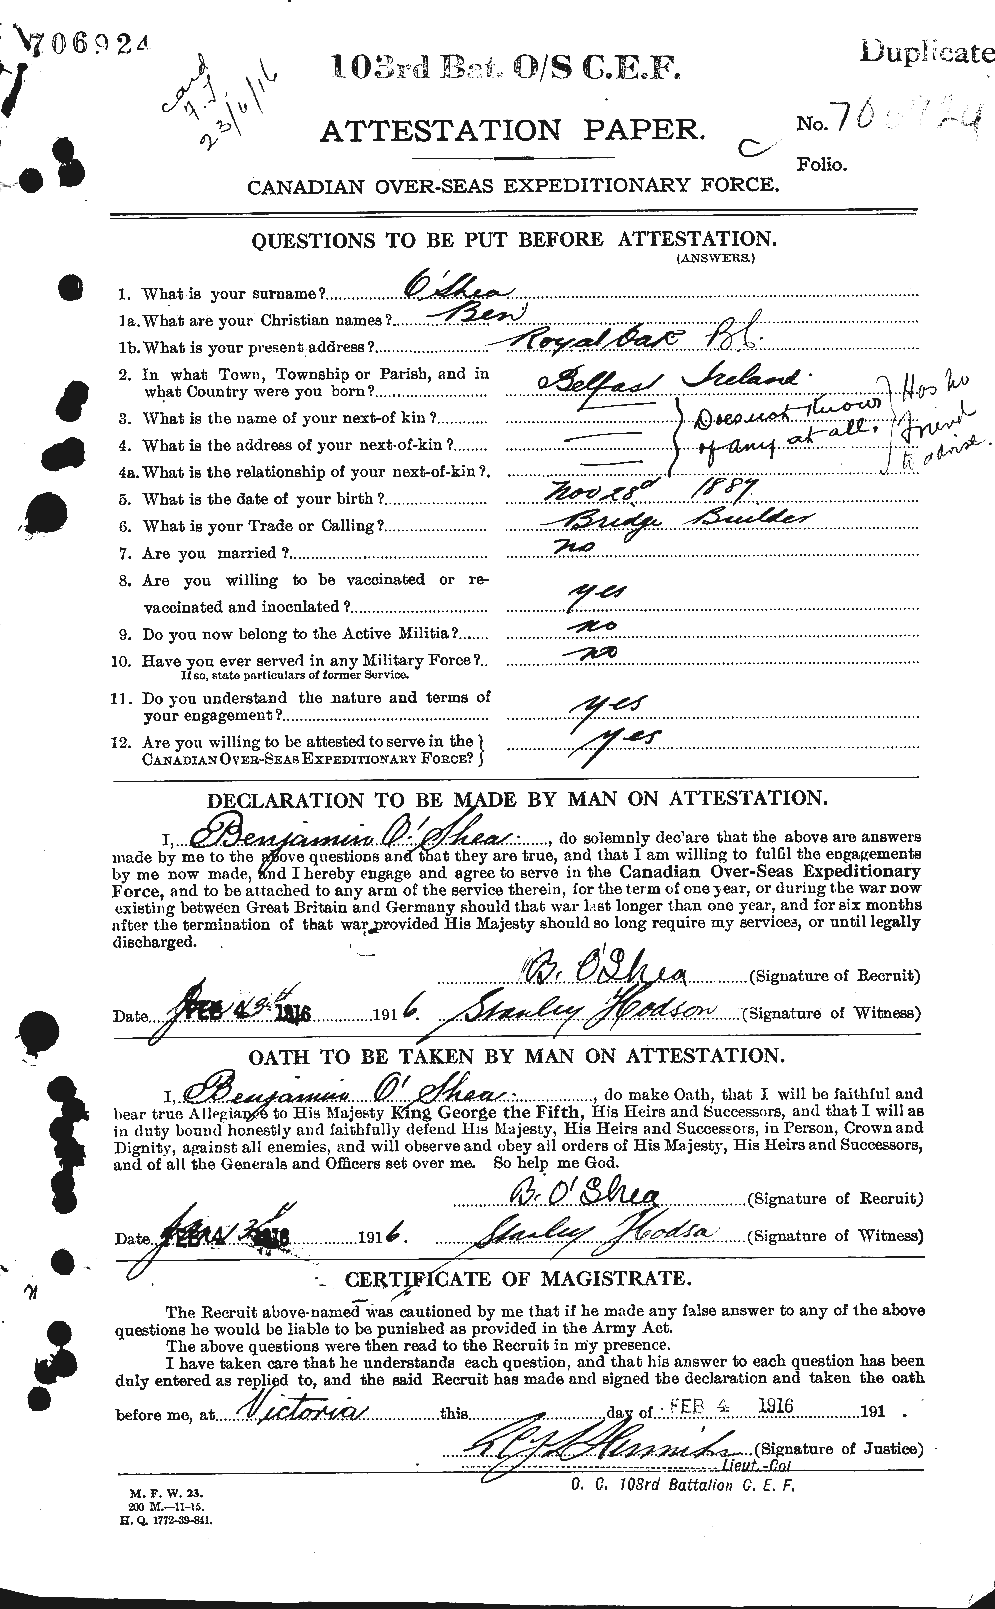 Dossiers du Personnel de la Première Guerre mondiale - CEC 691788a